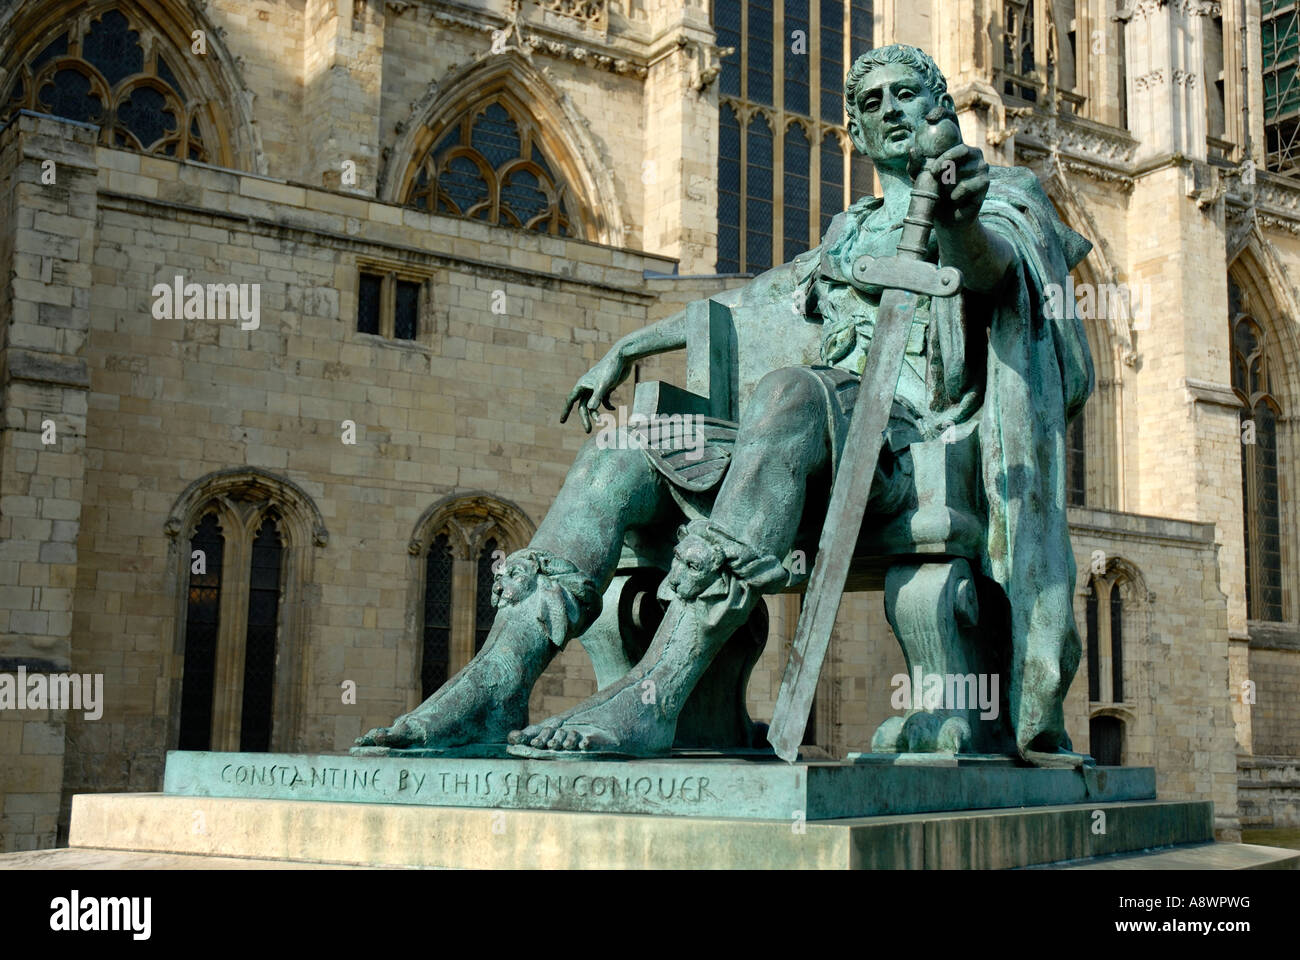 Une statue de Constantin le Grand à York Minster, York, Angleterre Banque D'Images